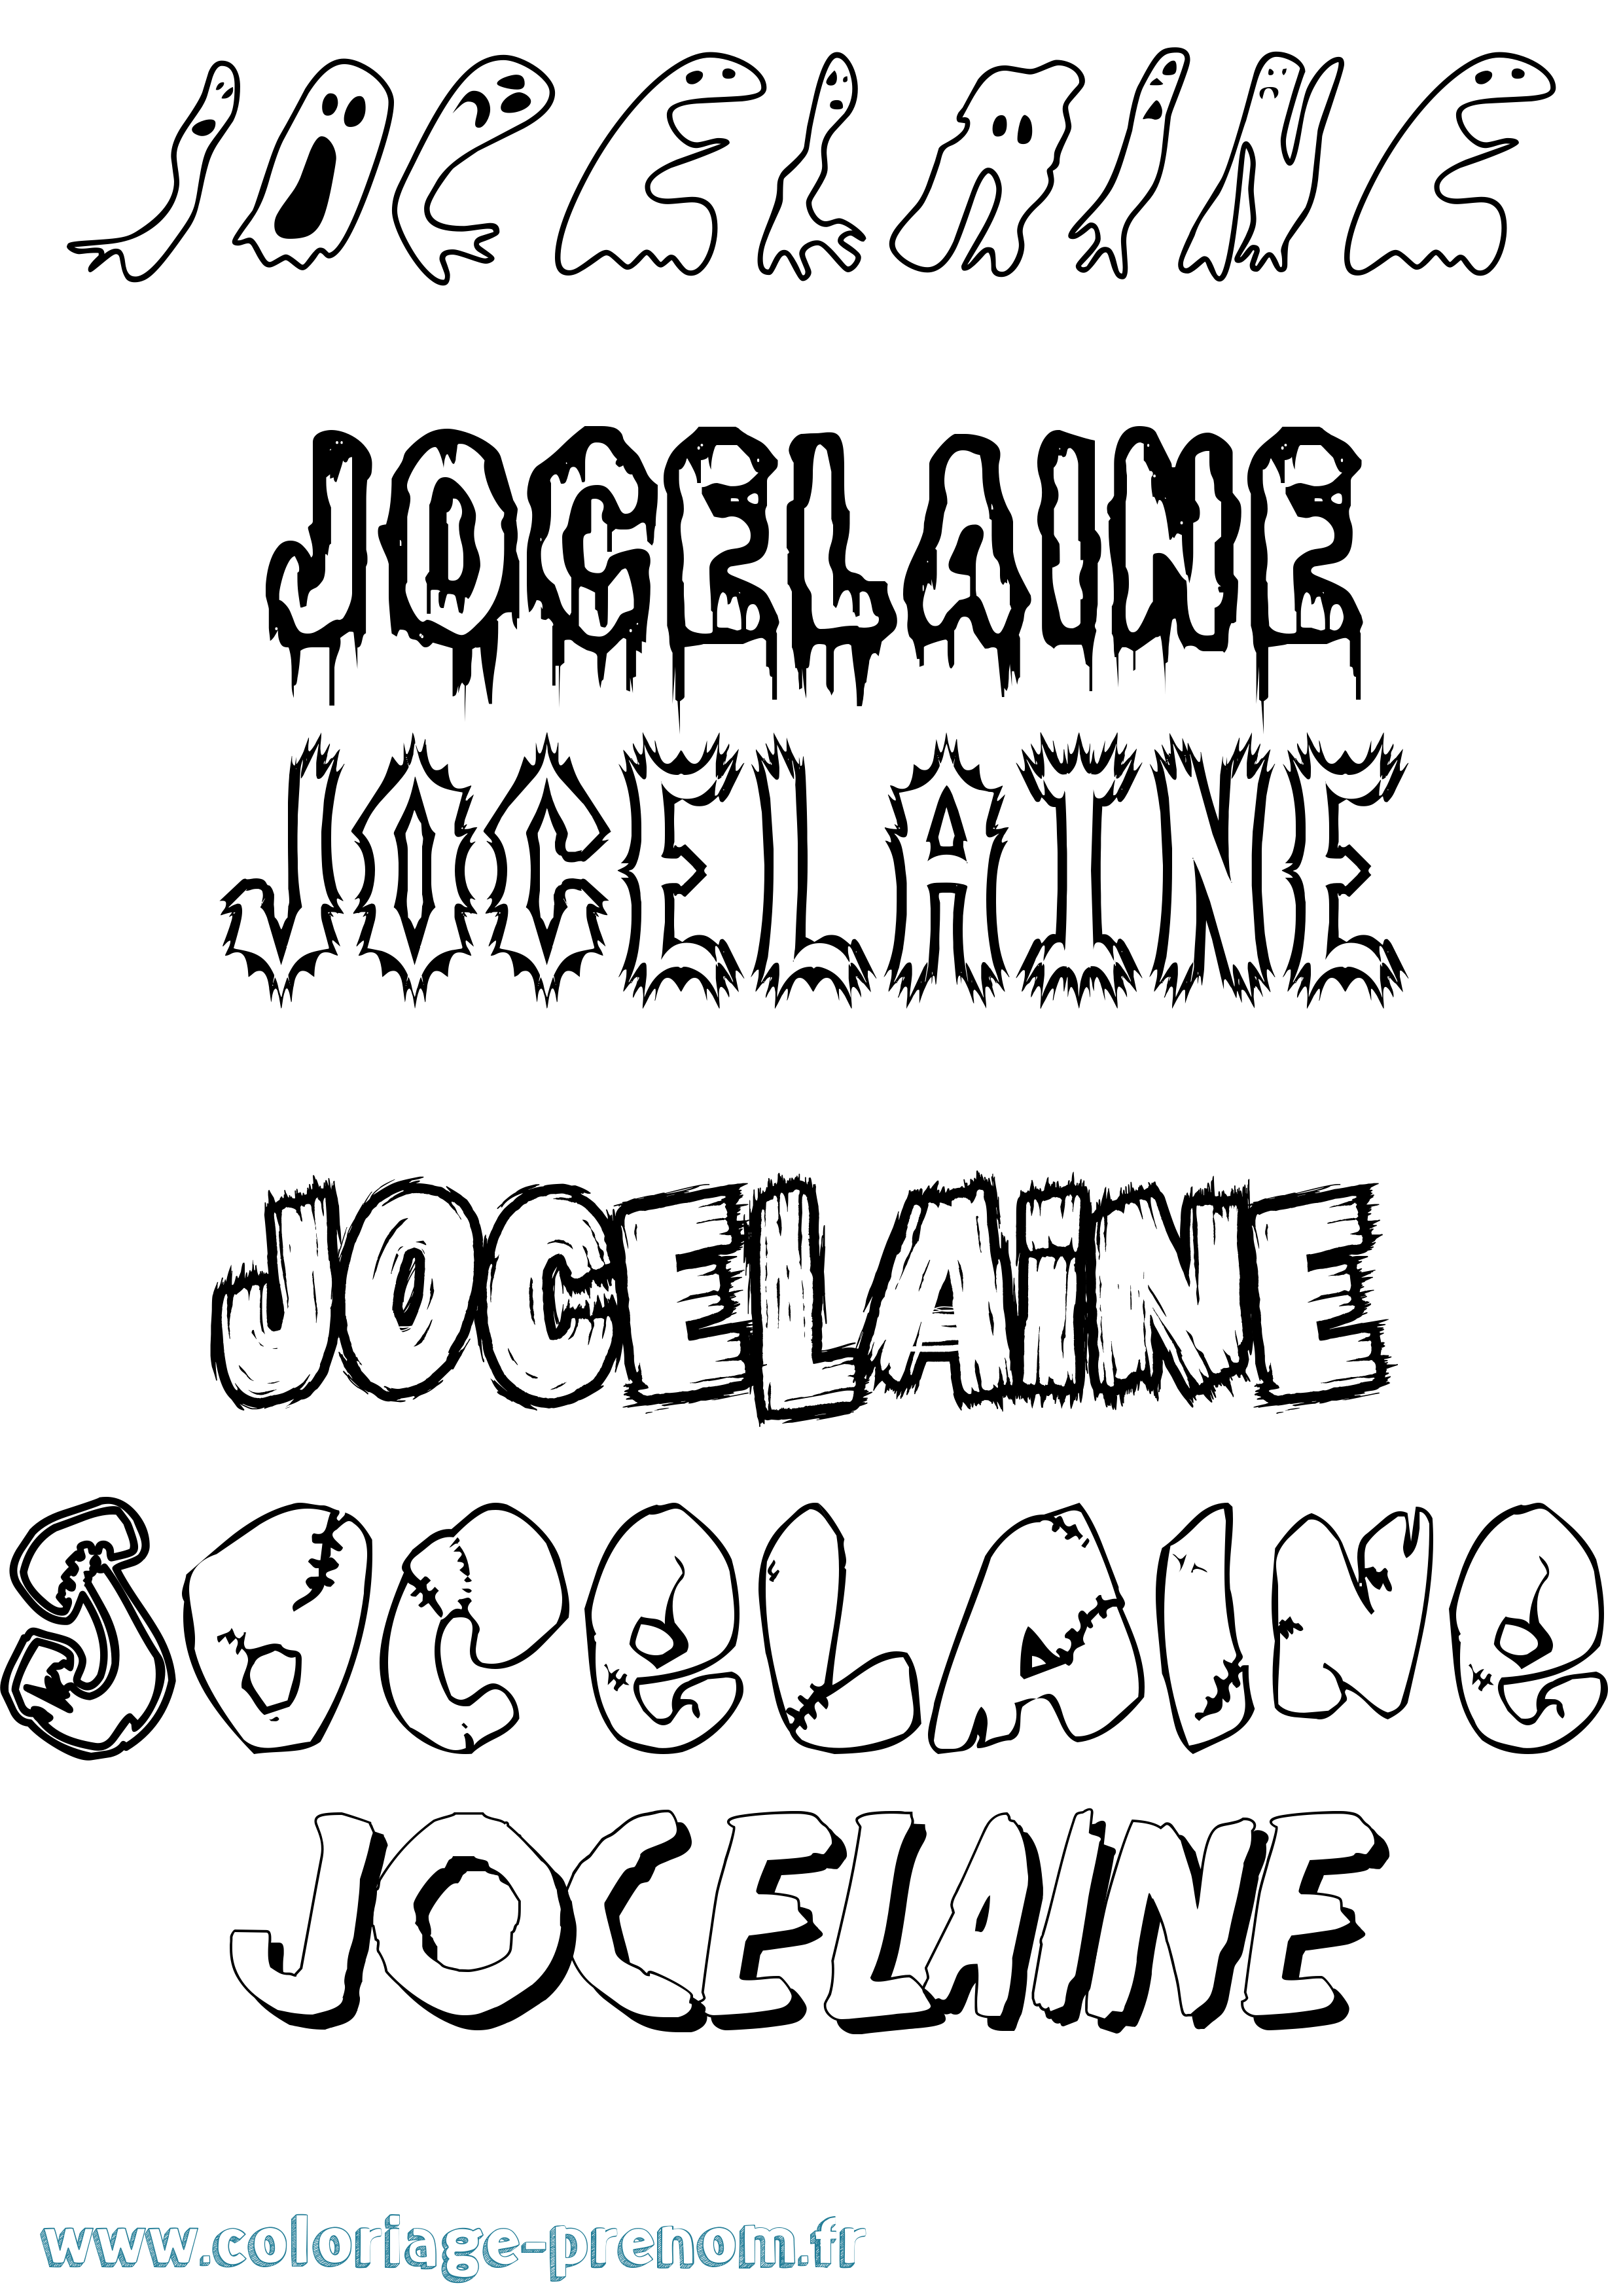 Coloriage prénom Jocelaine Frisson